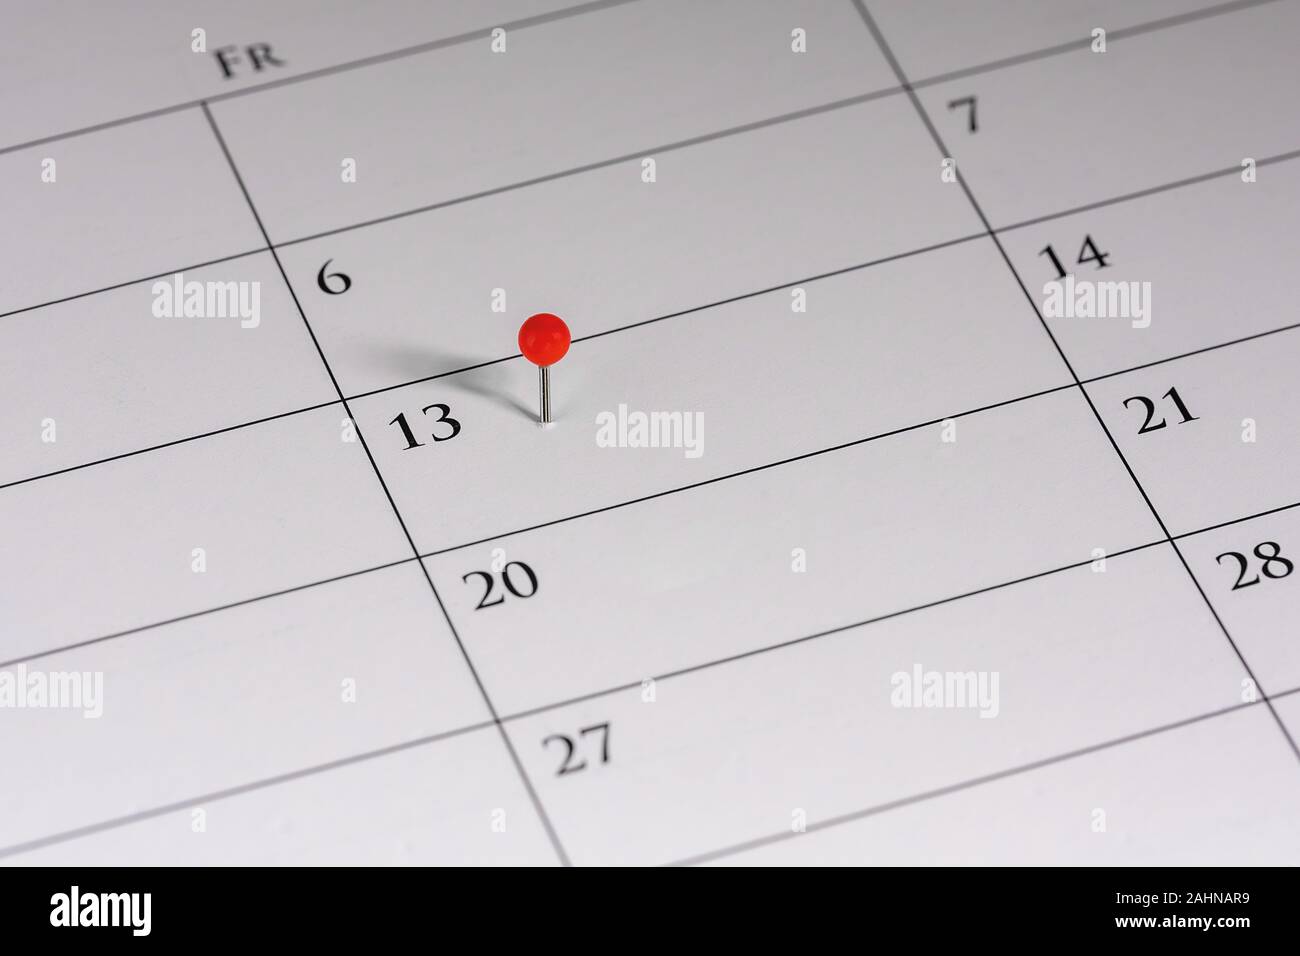 La superstition, la mauvaise chance le vendredi 13., un repère indique la date sur un calendrier Banque D'Images